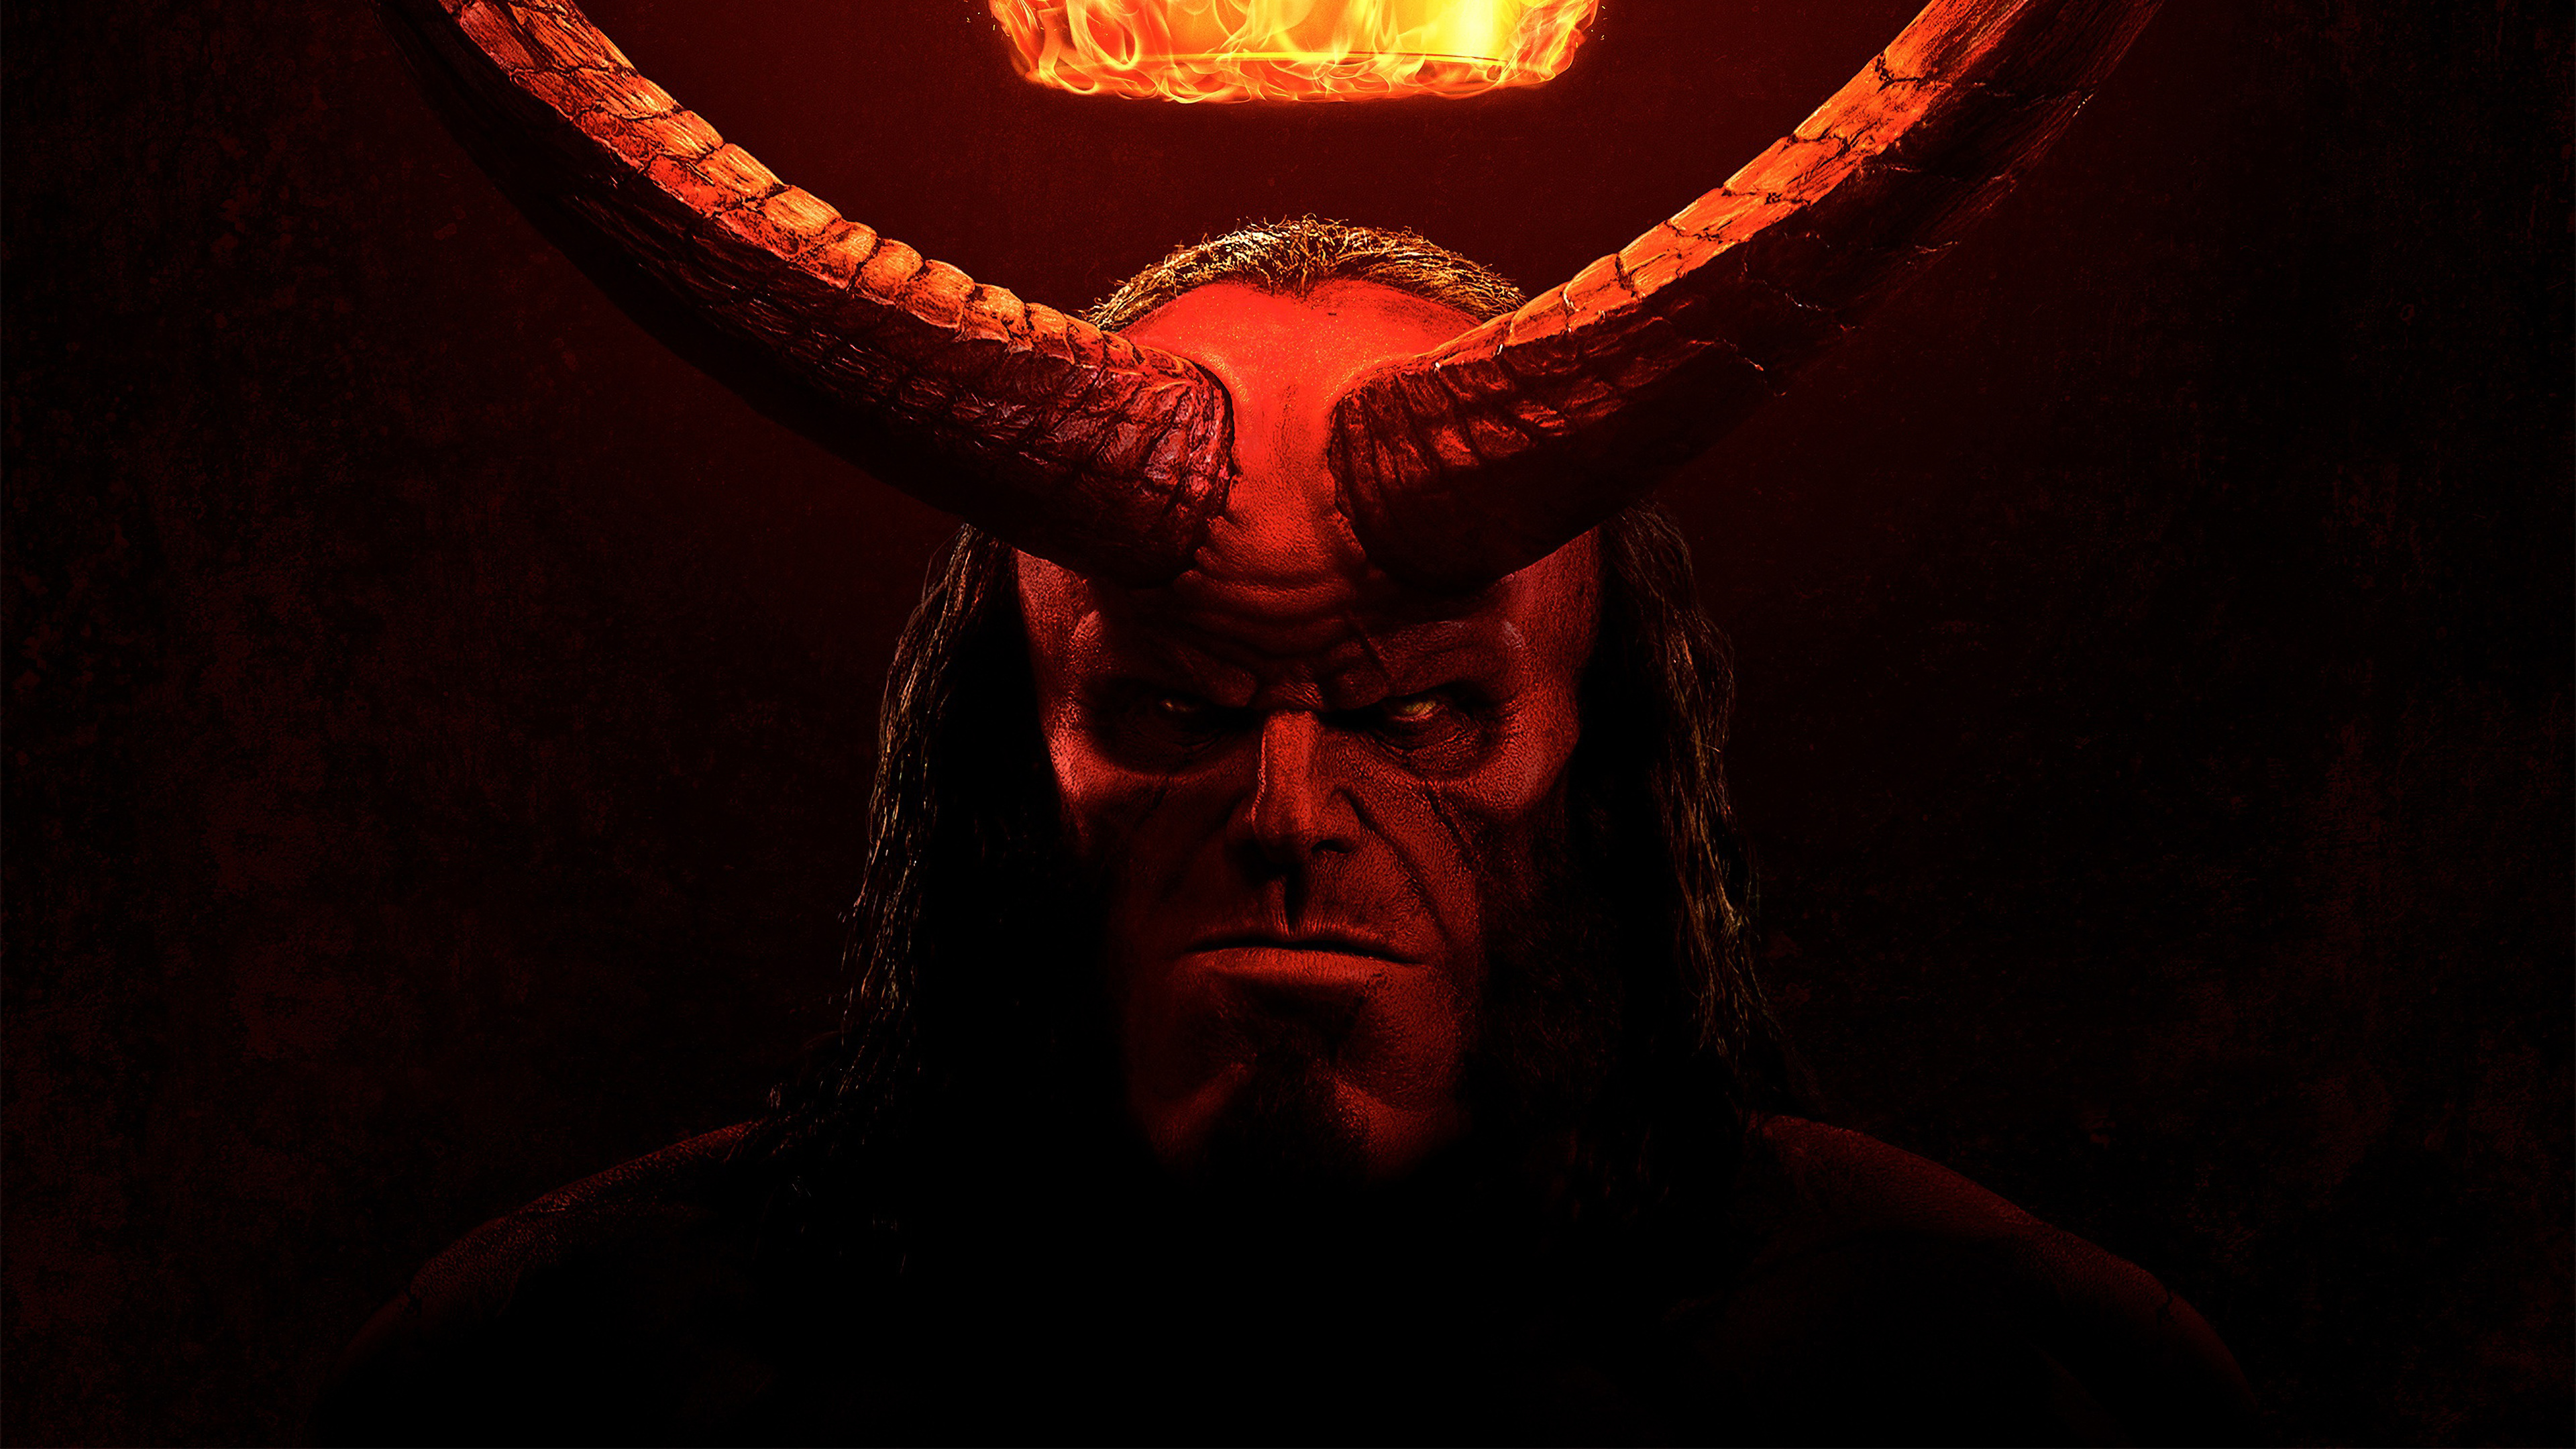 General 3840x2160 Hellboy dark face fire horns long hair frontal view comics low light digital art